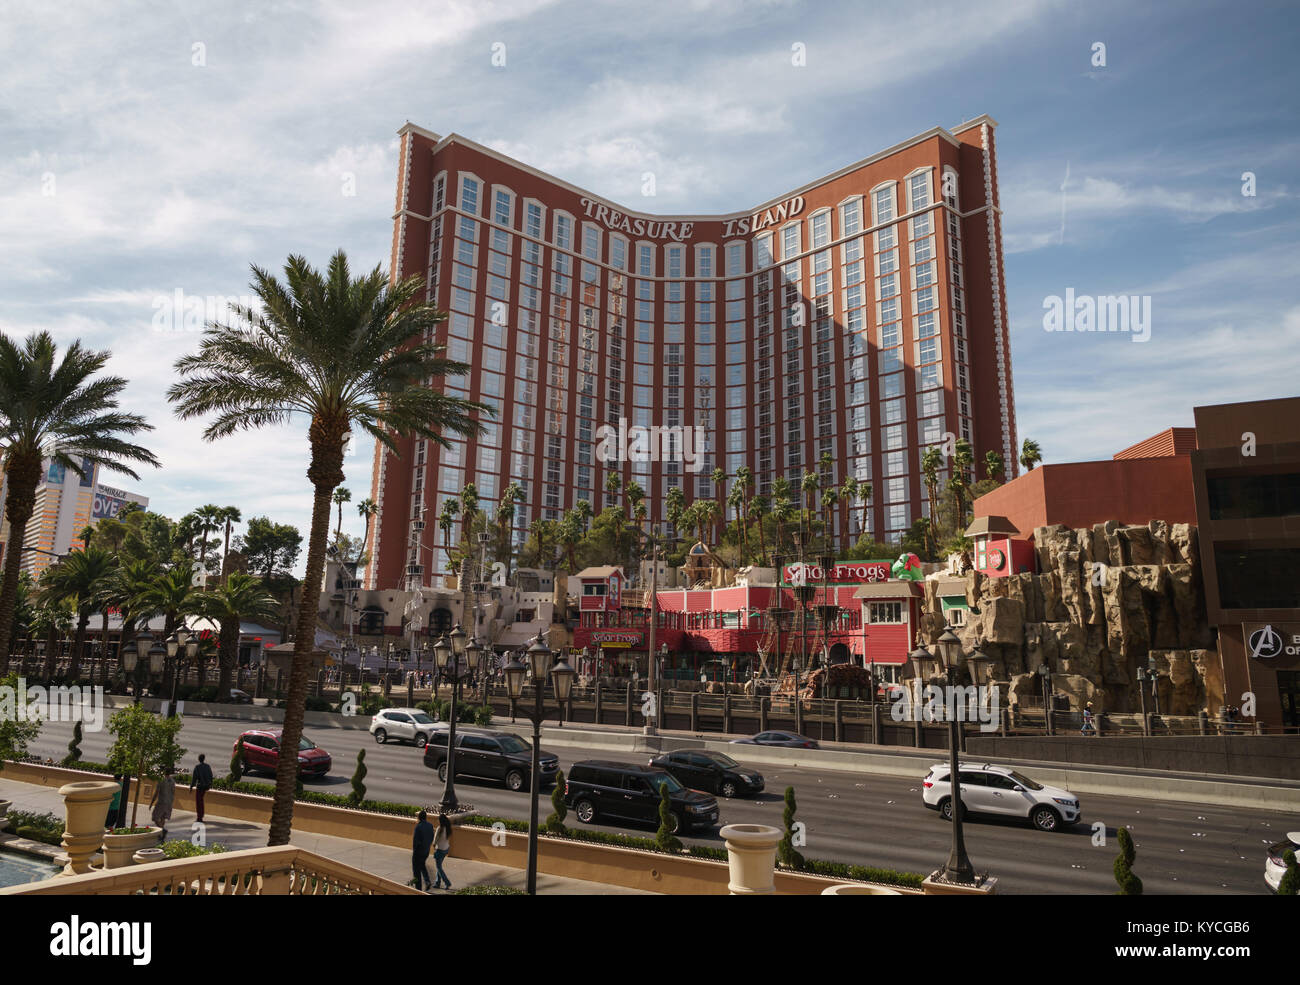 LAS VEGAS, USA - CIRCA NOVEMBER, 2017: Treasure Island casino Las Vegas in daylight, editorial Stock Photo